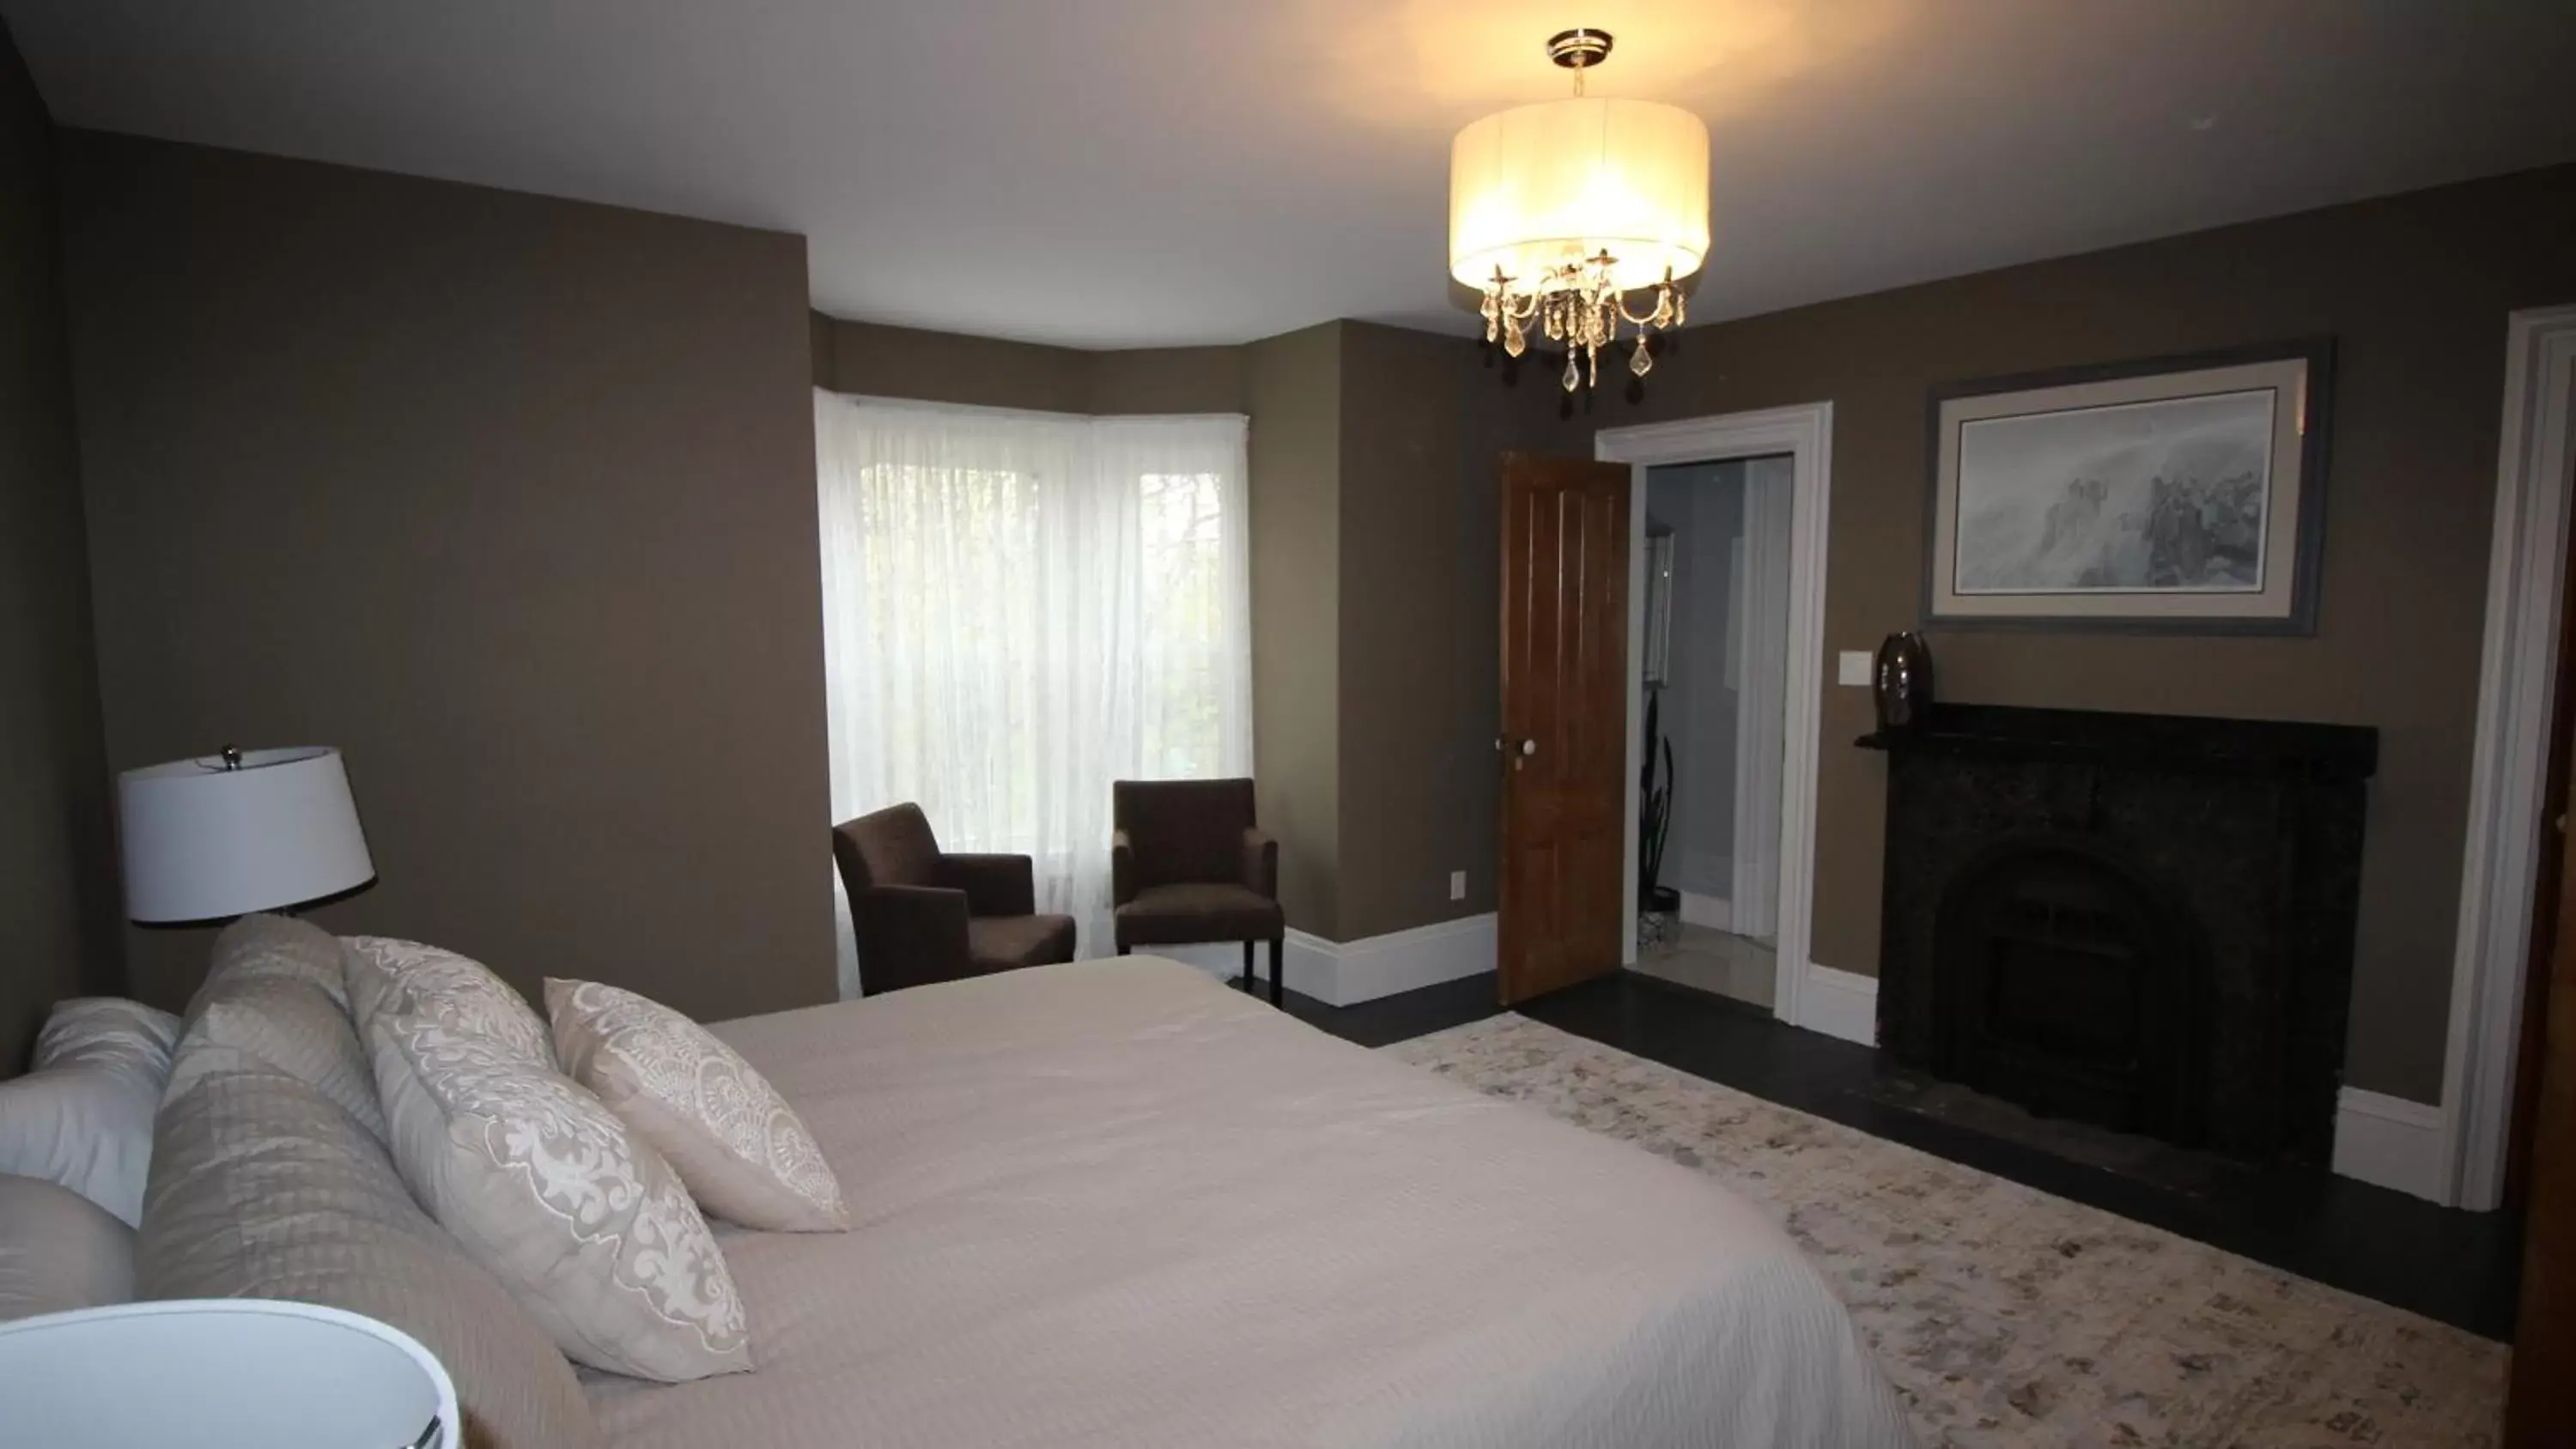 Deluxe Suite in Maplehurst Manor Bed and Breakfast